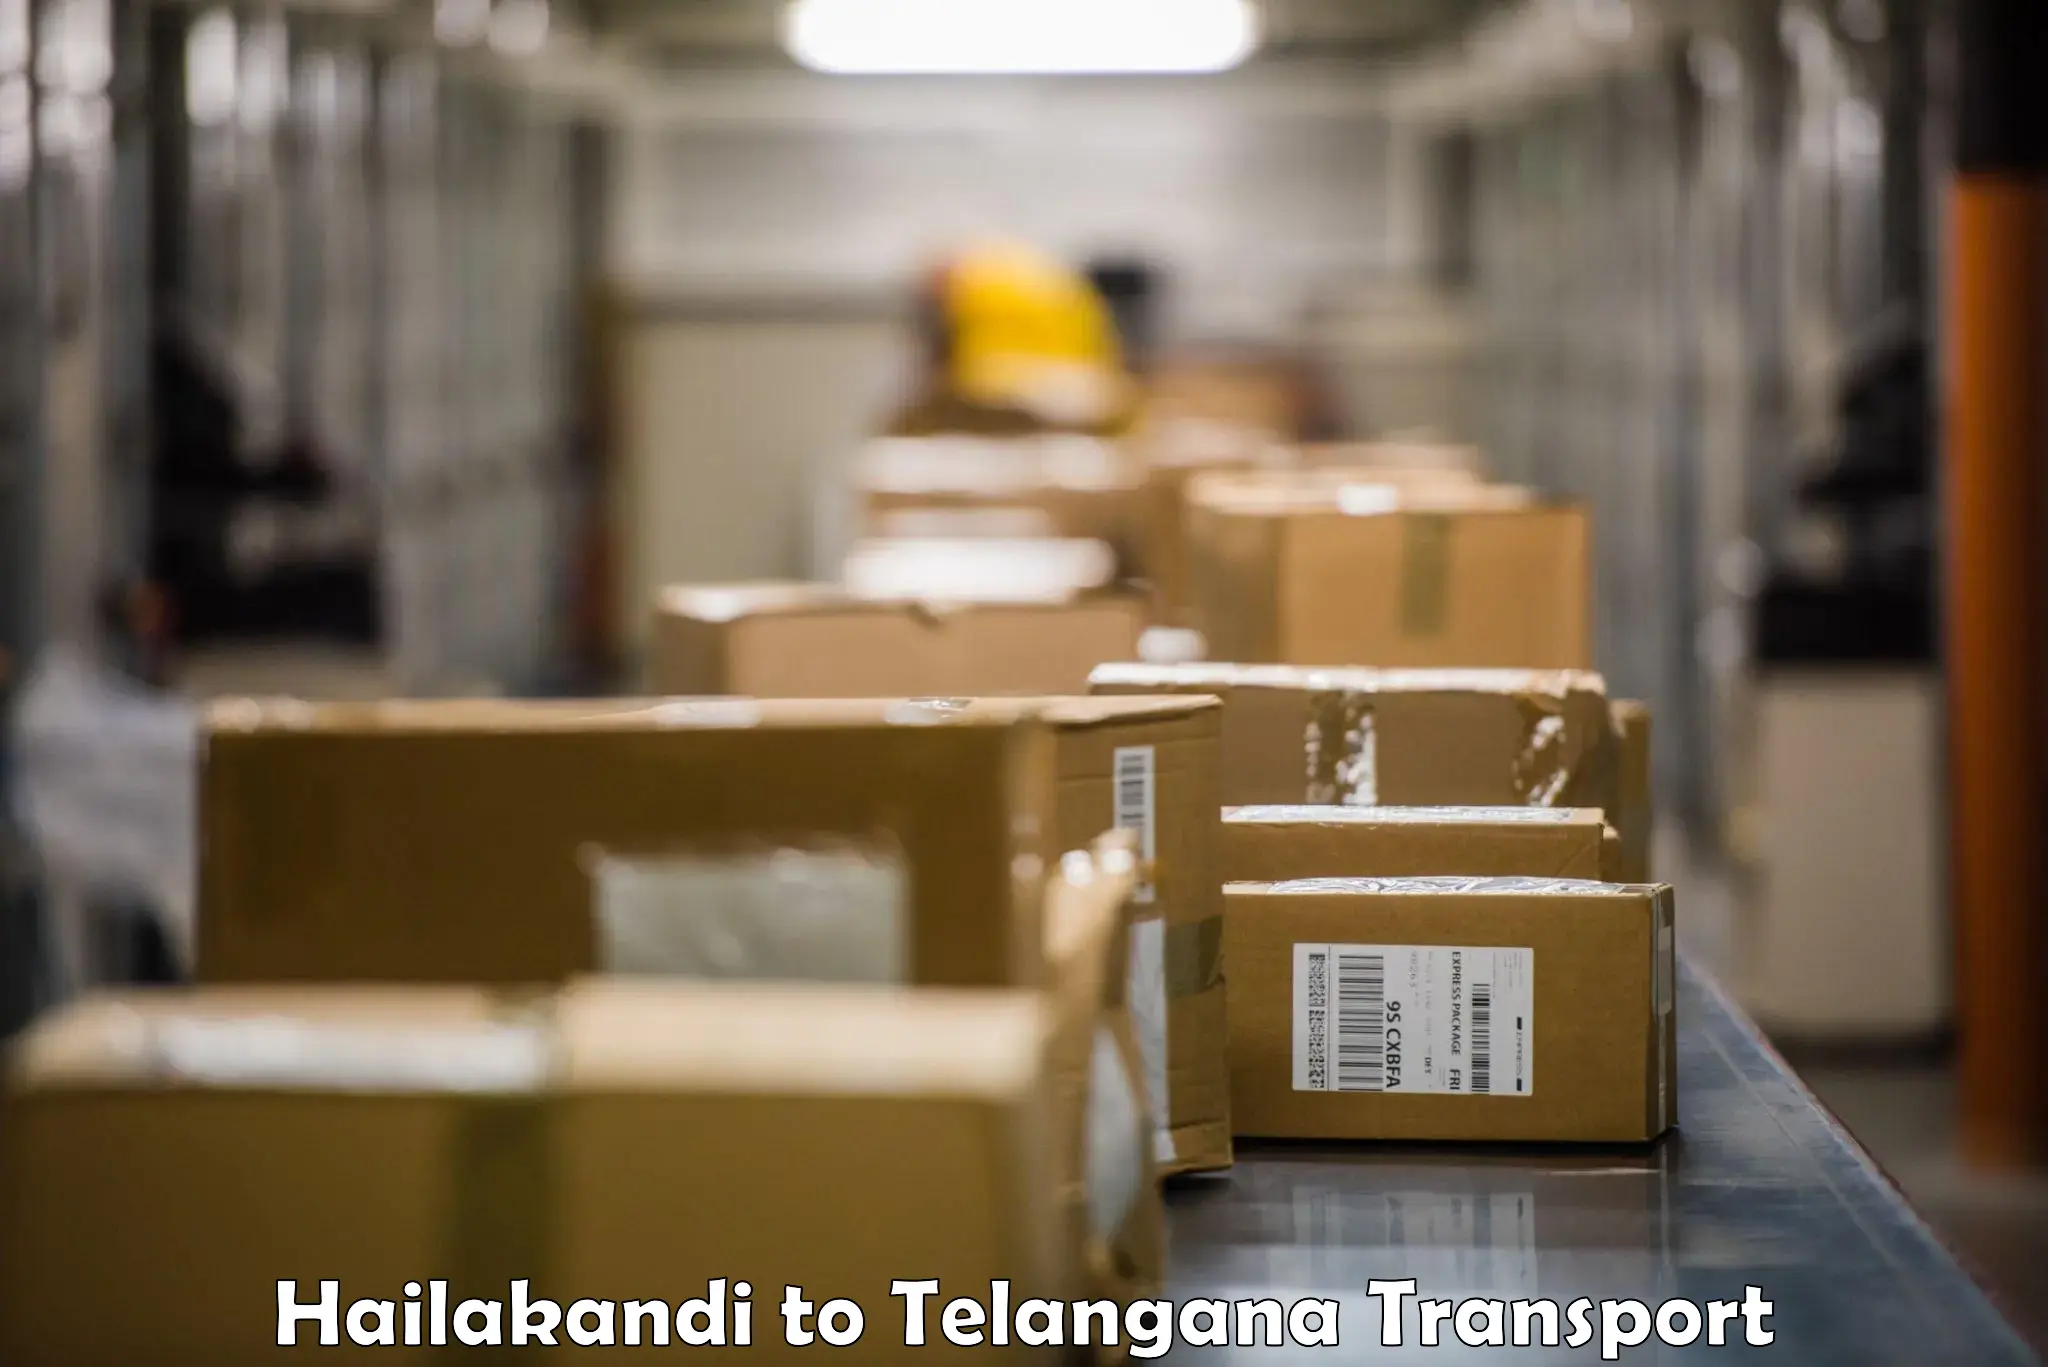 Goods delivery service Hailakandi to Bommalaramaram